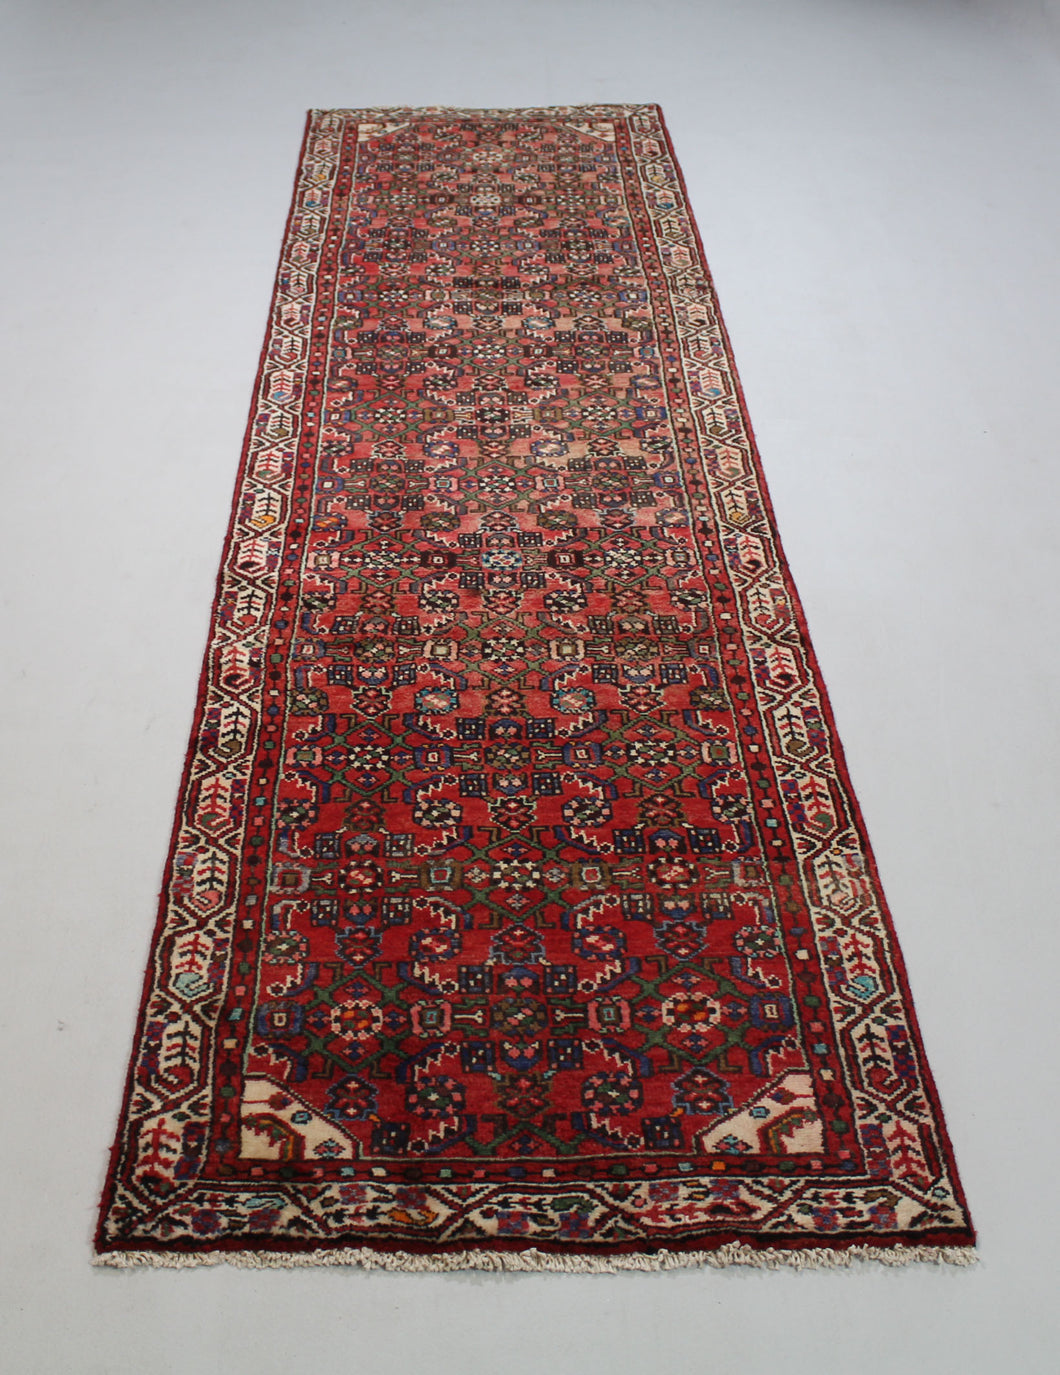 Handmade Antique, Vintage oriental wool Persian \Hamedan rug - 296 X 83 cm